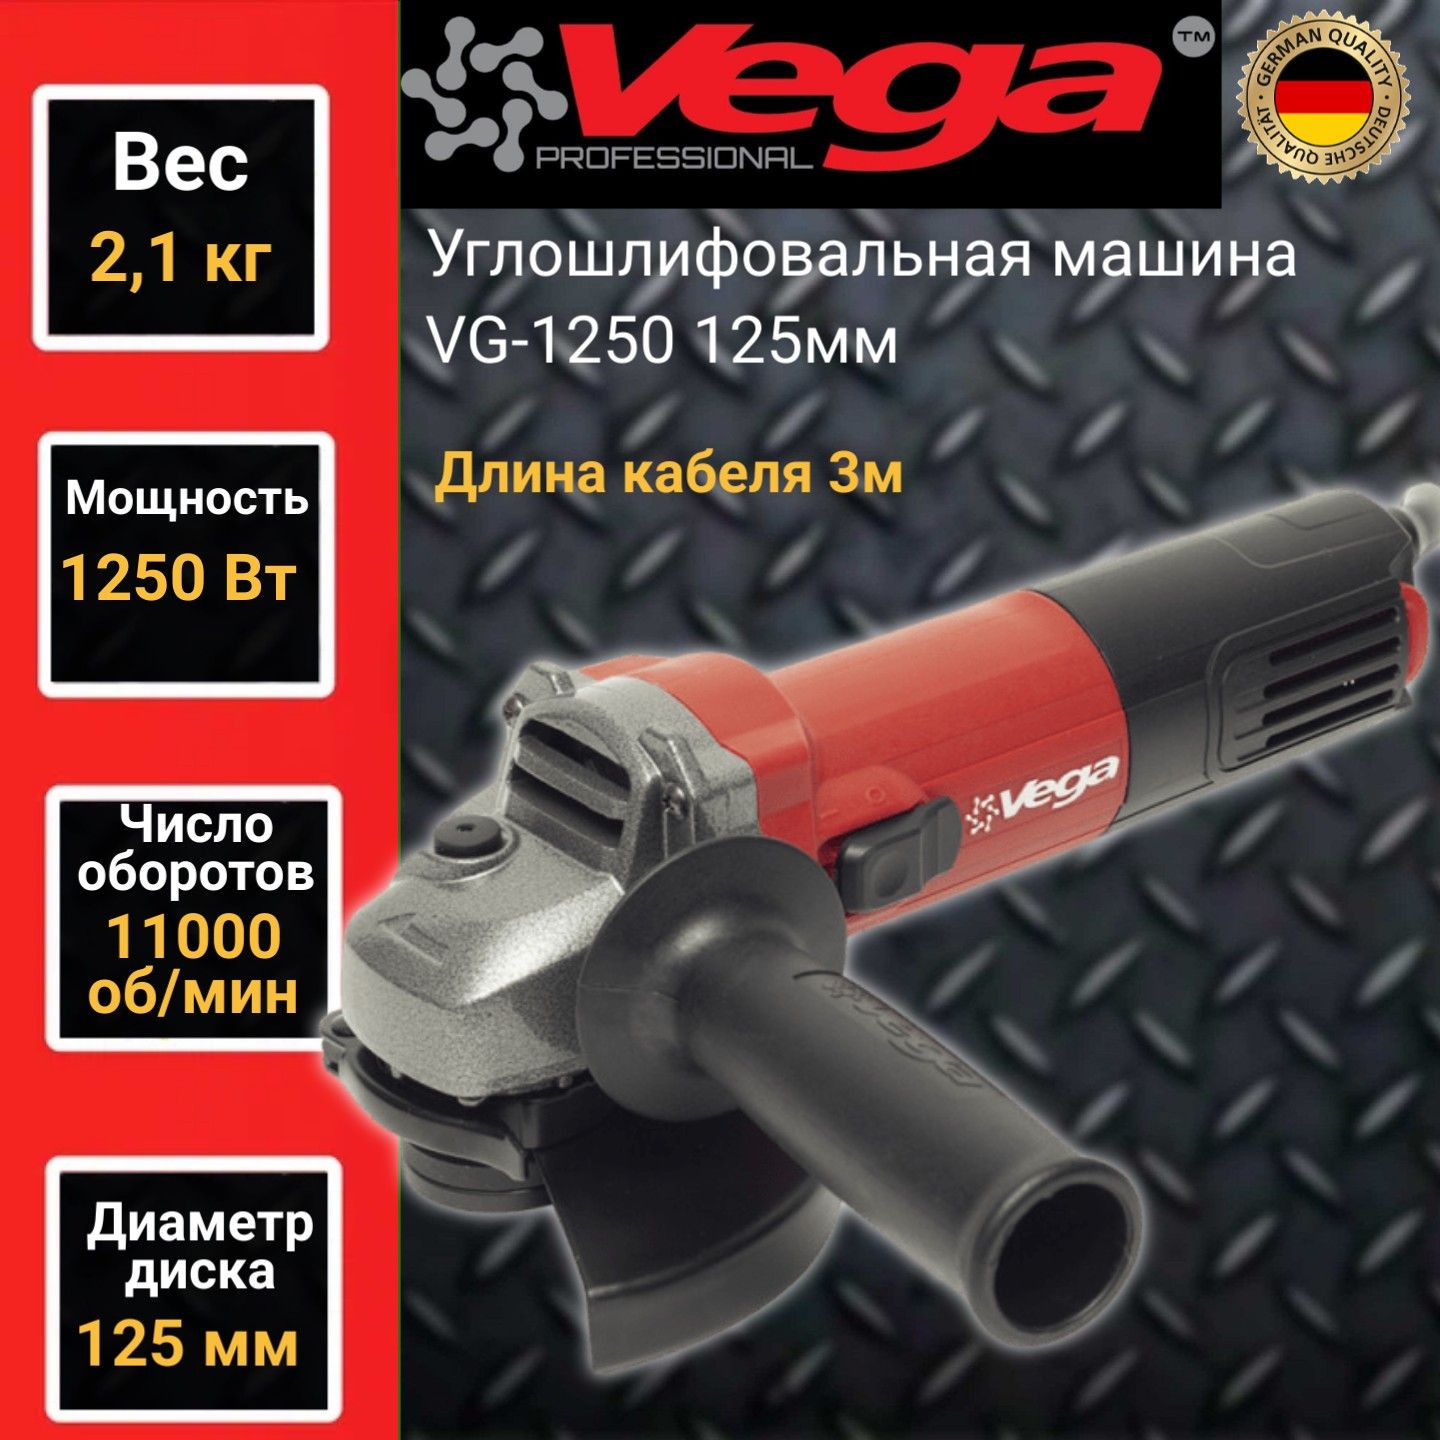 Углошлифовальная машина болгарка Vega Professional VG 1250, 125мм круг,1250Вт,11000об/мин машина углошлифовальная зубр профессионал ab 125 42 20в бесщеточная 2 акб 4ач